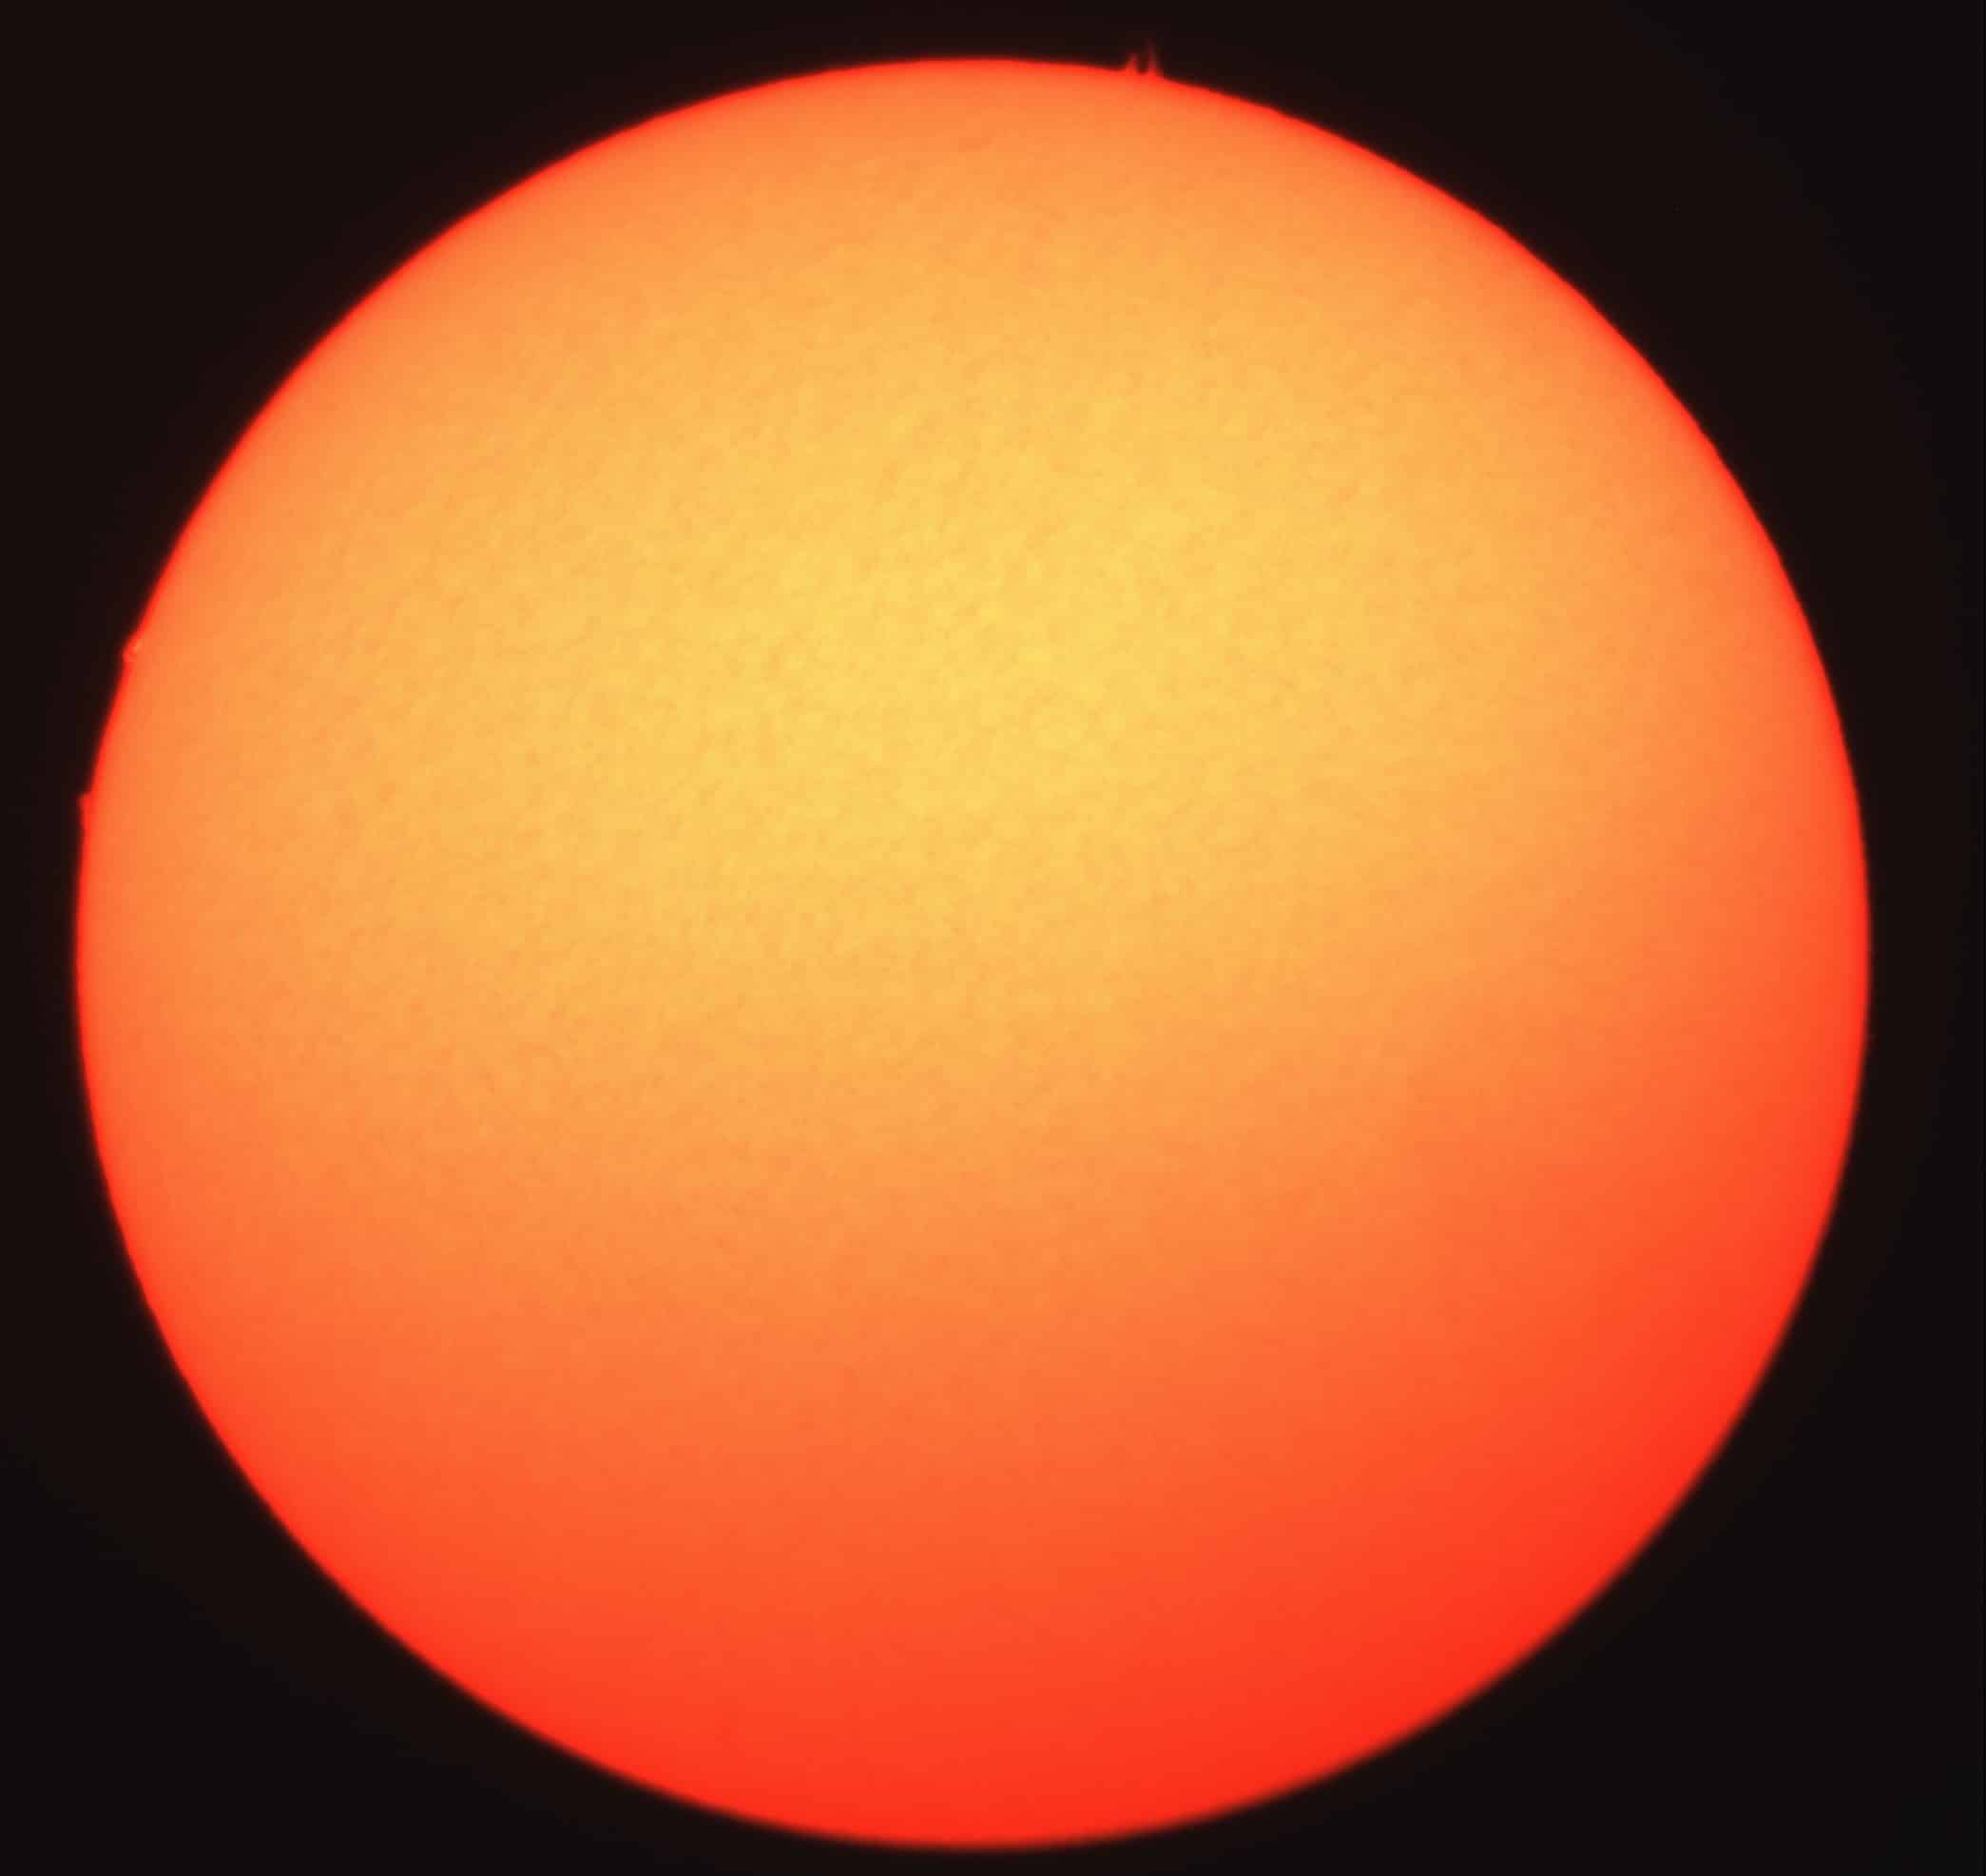 لقطة نادرة للشمس .. ألسنة اللهب أكبر من الأرض